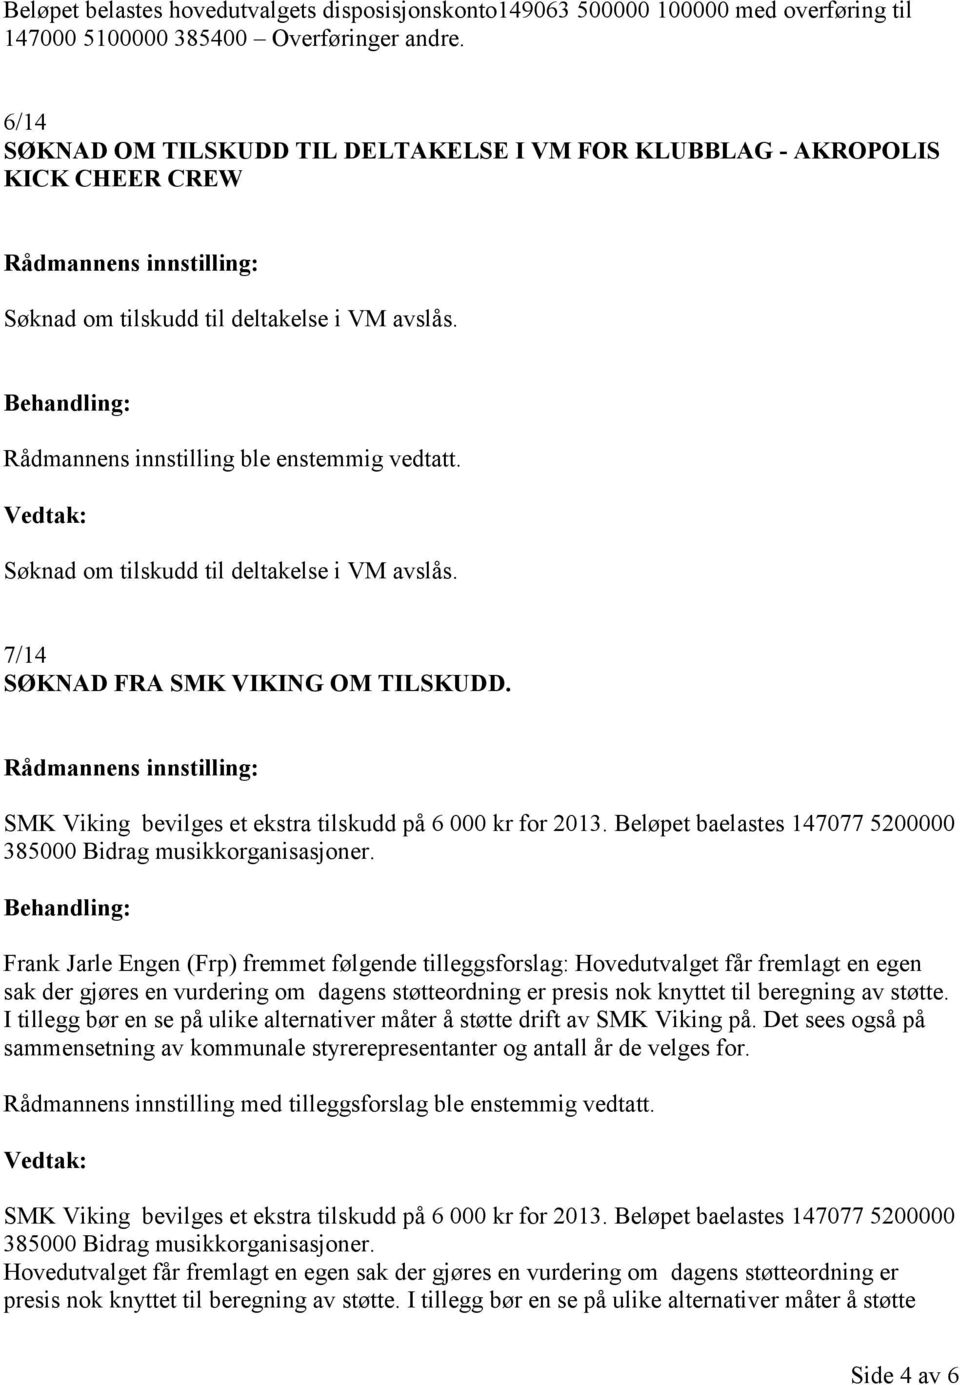 SMK Viking bevilges et ekstra tilskudd på 6 000 kr for 2013. Beløpet baelastes 147077 5200000 385000 Bidrag musikkorganisasjoner.